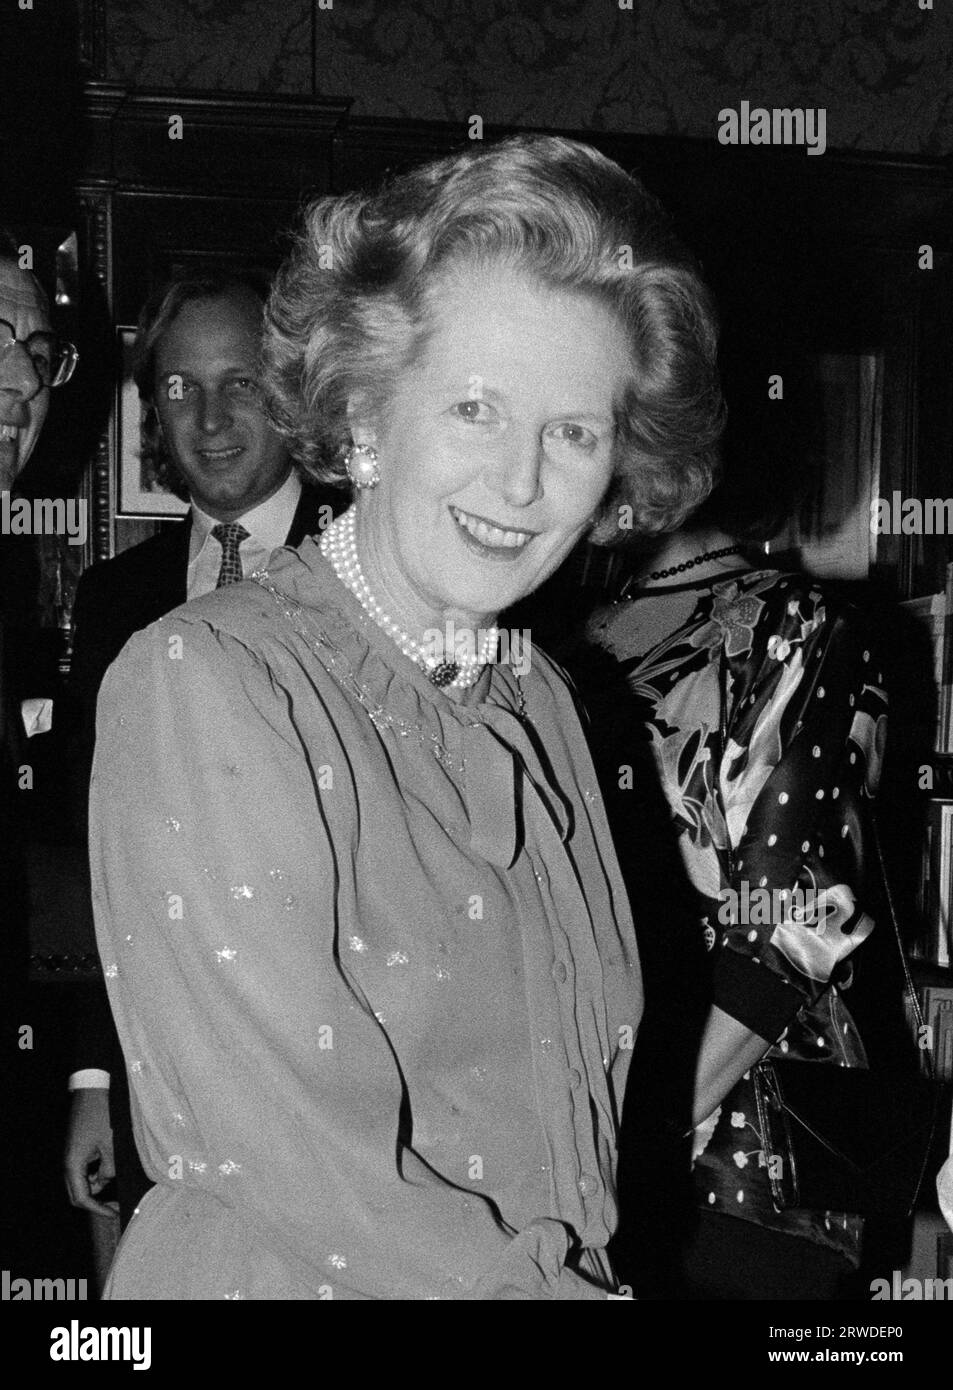 LONDRA, REGNO UNITO. 27 agosto 1986: Il primo ministro Margaret Thatcher al Theatre Royal Haymarket per una rappresentazione di Long Day's Journey into Night. Foto del file © Paul Smith/Featureflash Foto Stock